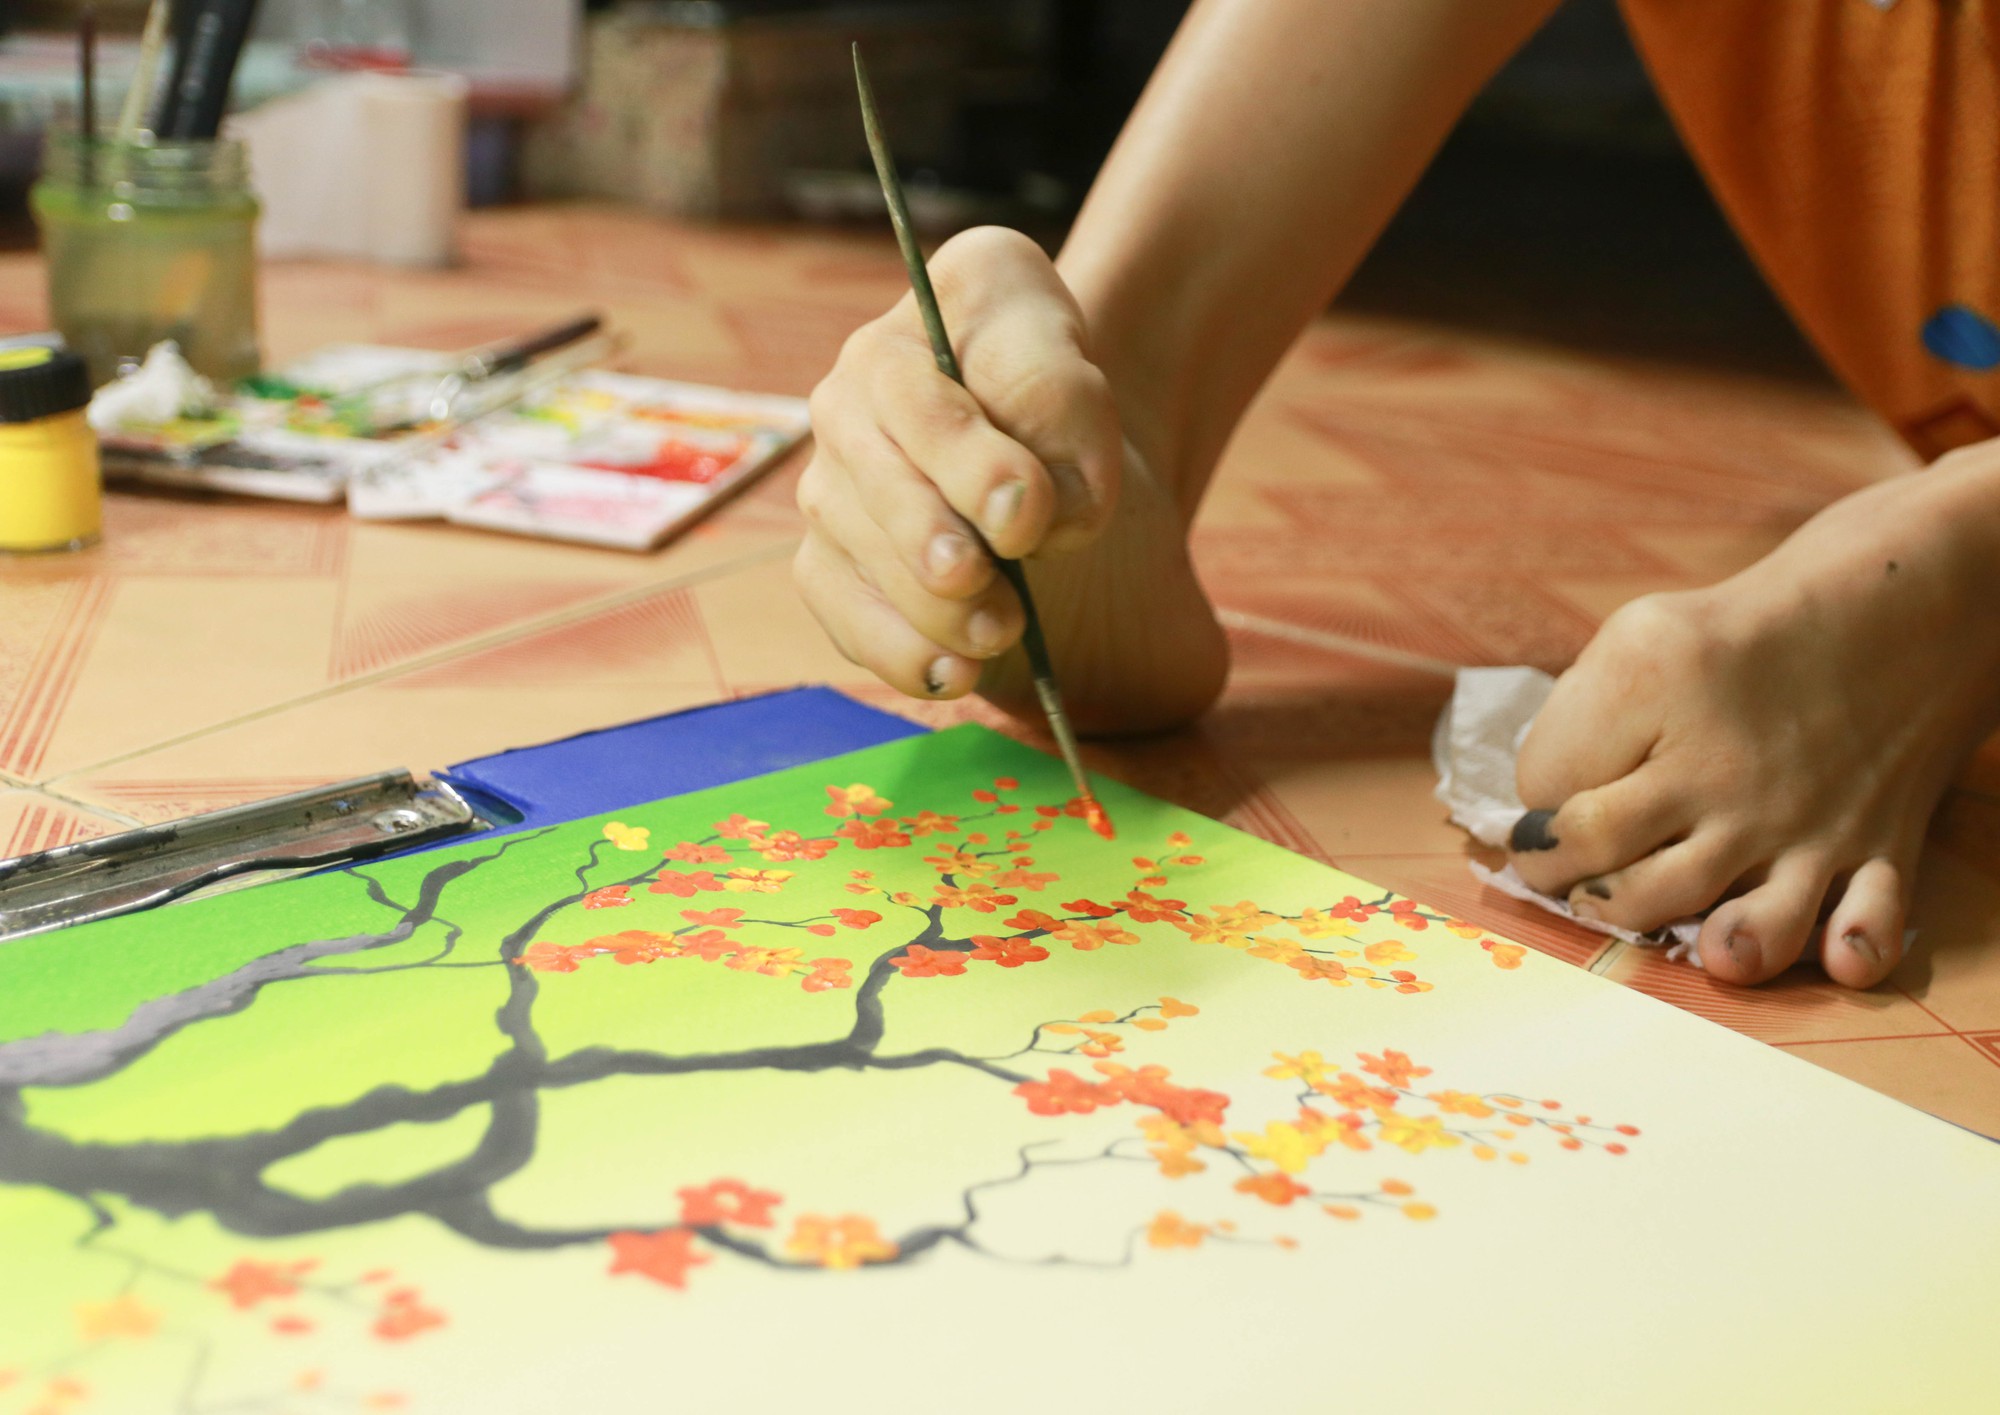 Cô gái khuyết tật ở TP.HCM với niềm đam mê vẽ tranh bằng chân suốt 20 năm - Ảnh 2.